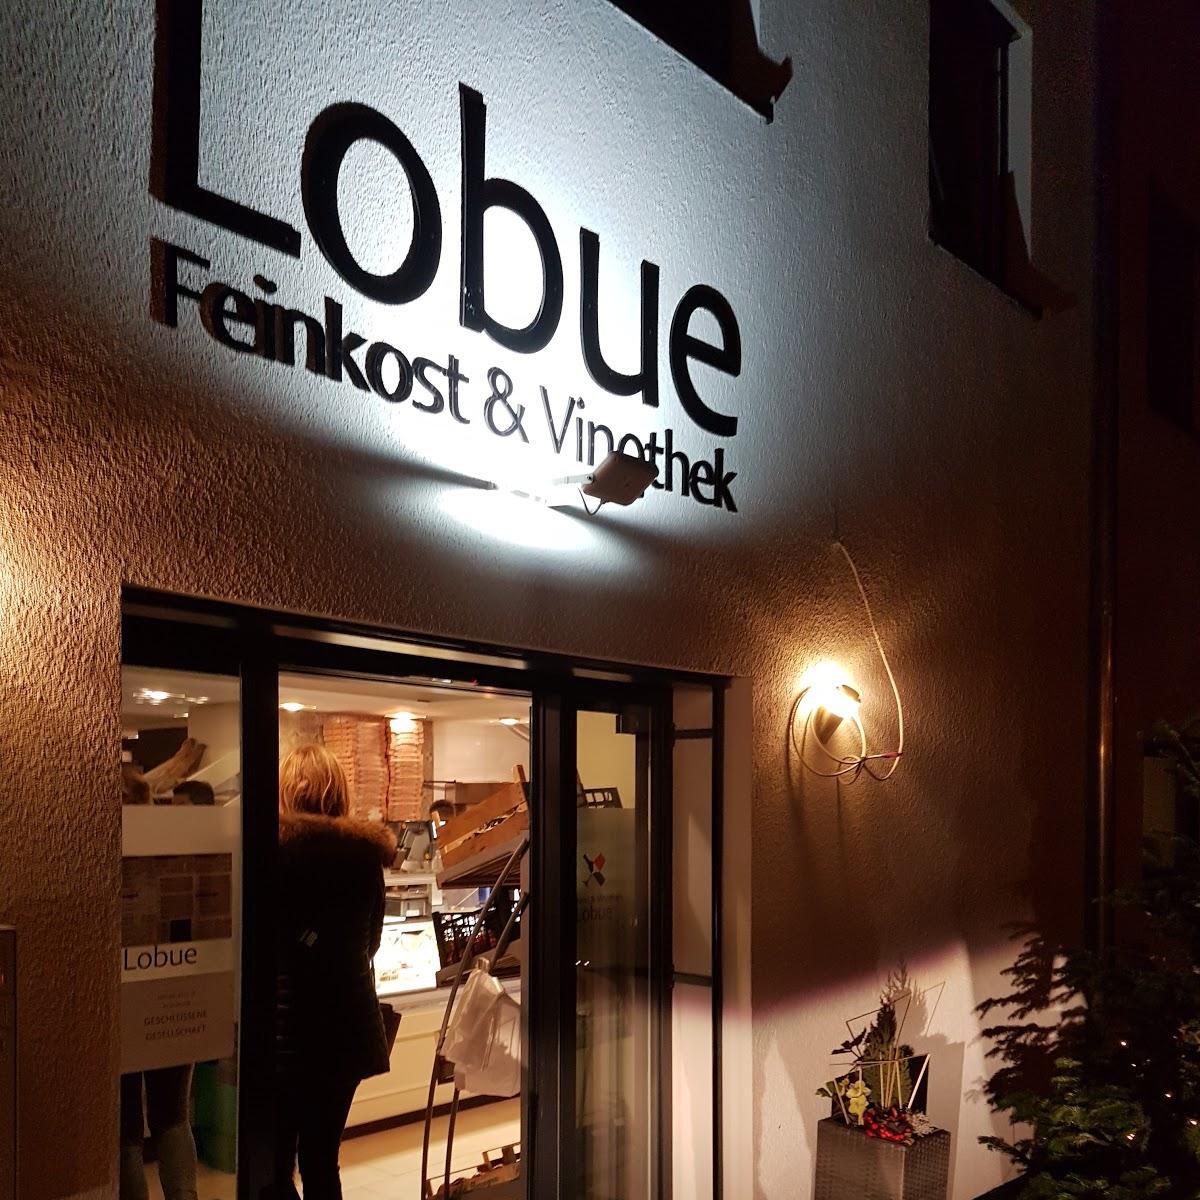 Restaurant "Lobue Feinkost & Vinothek" in  Urbach